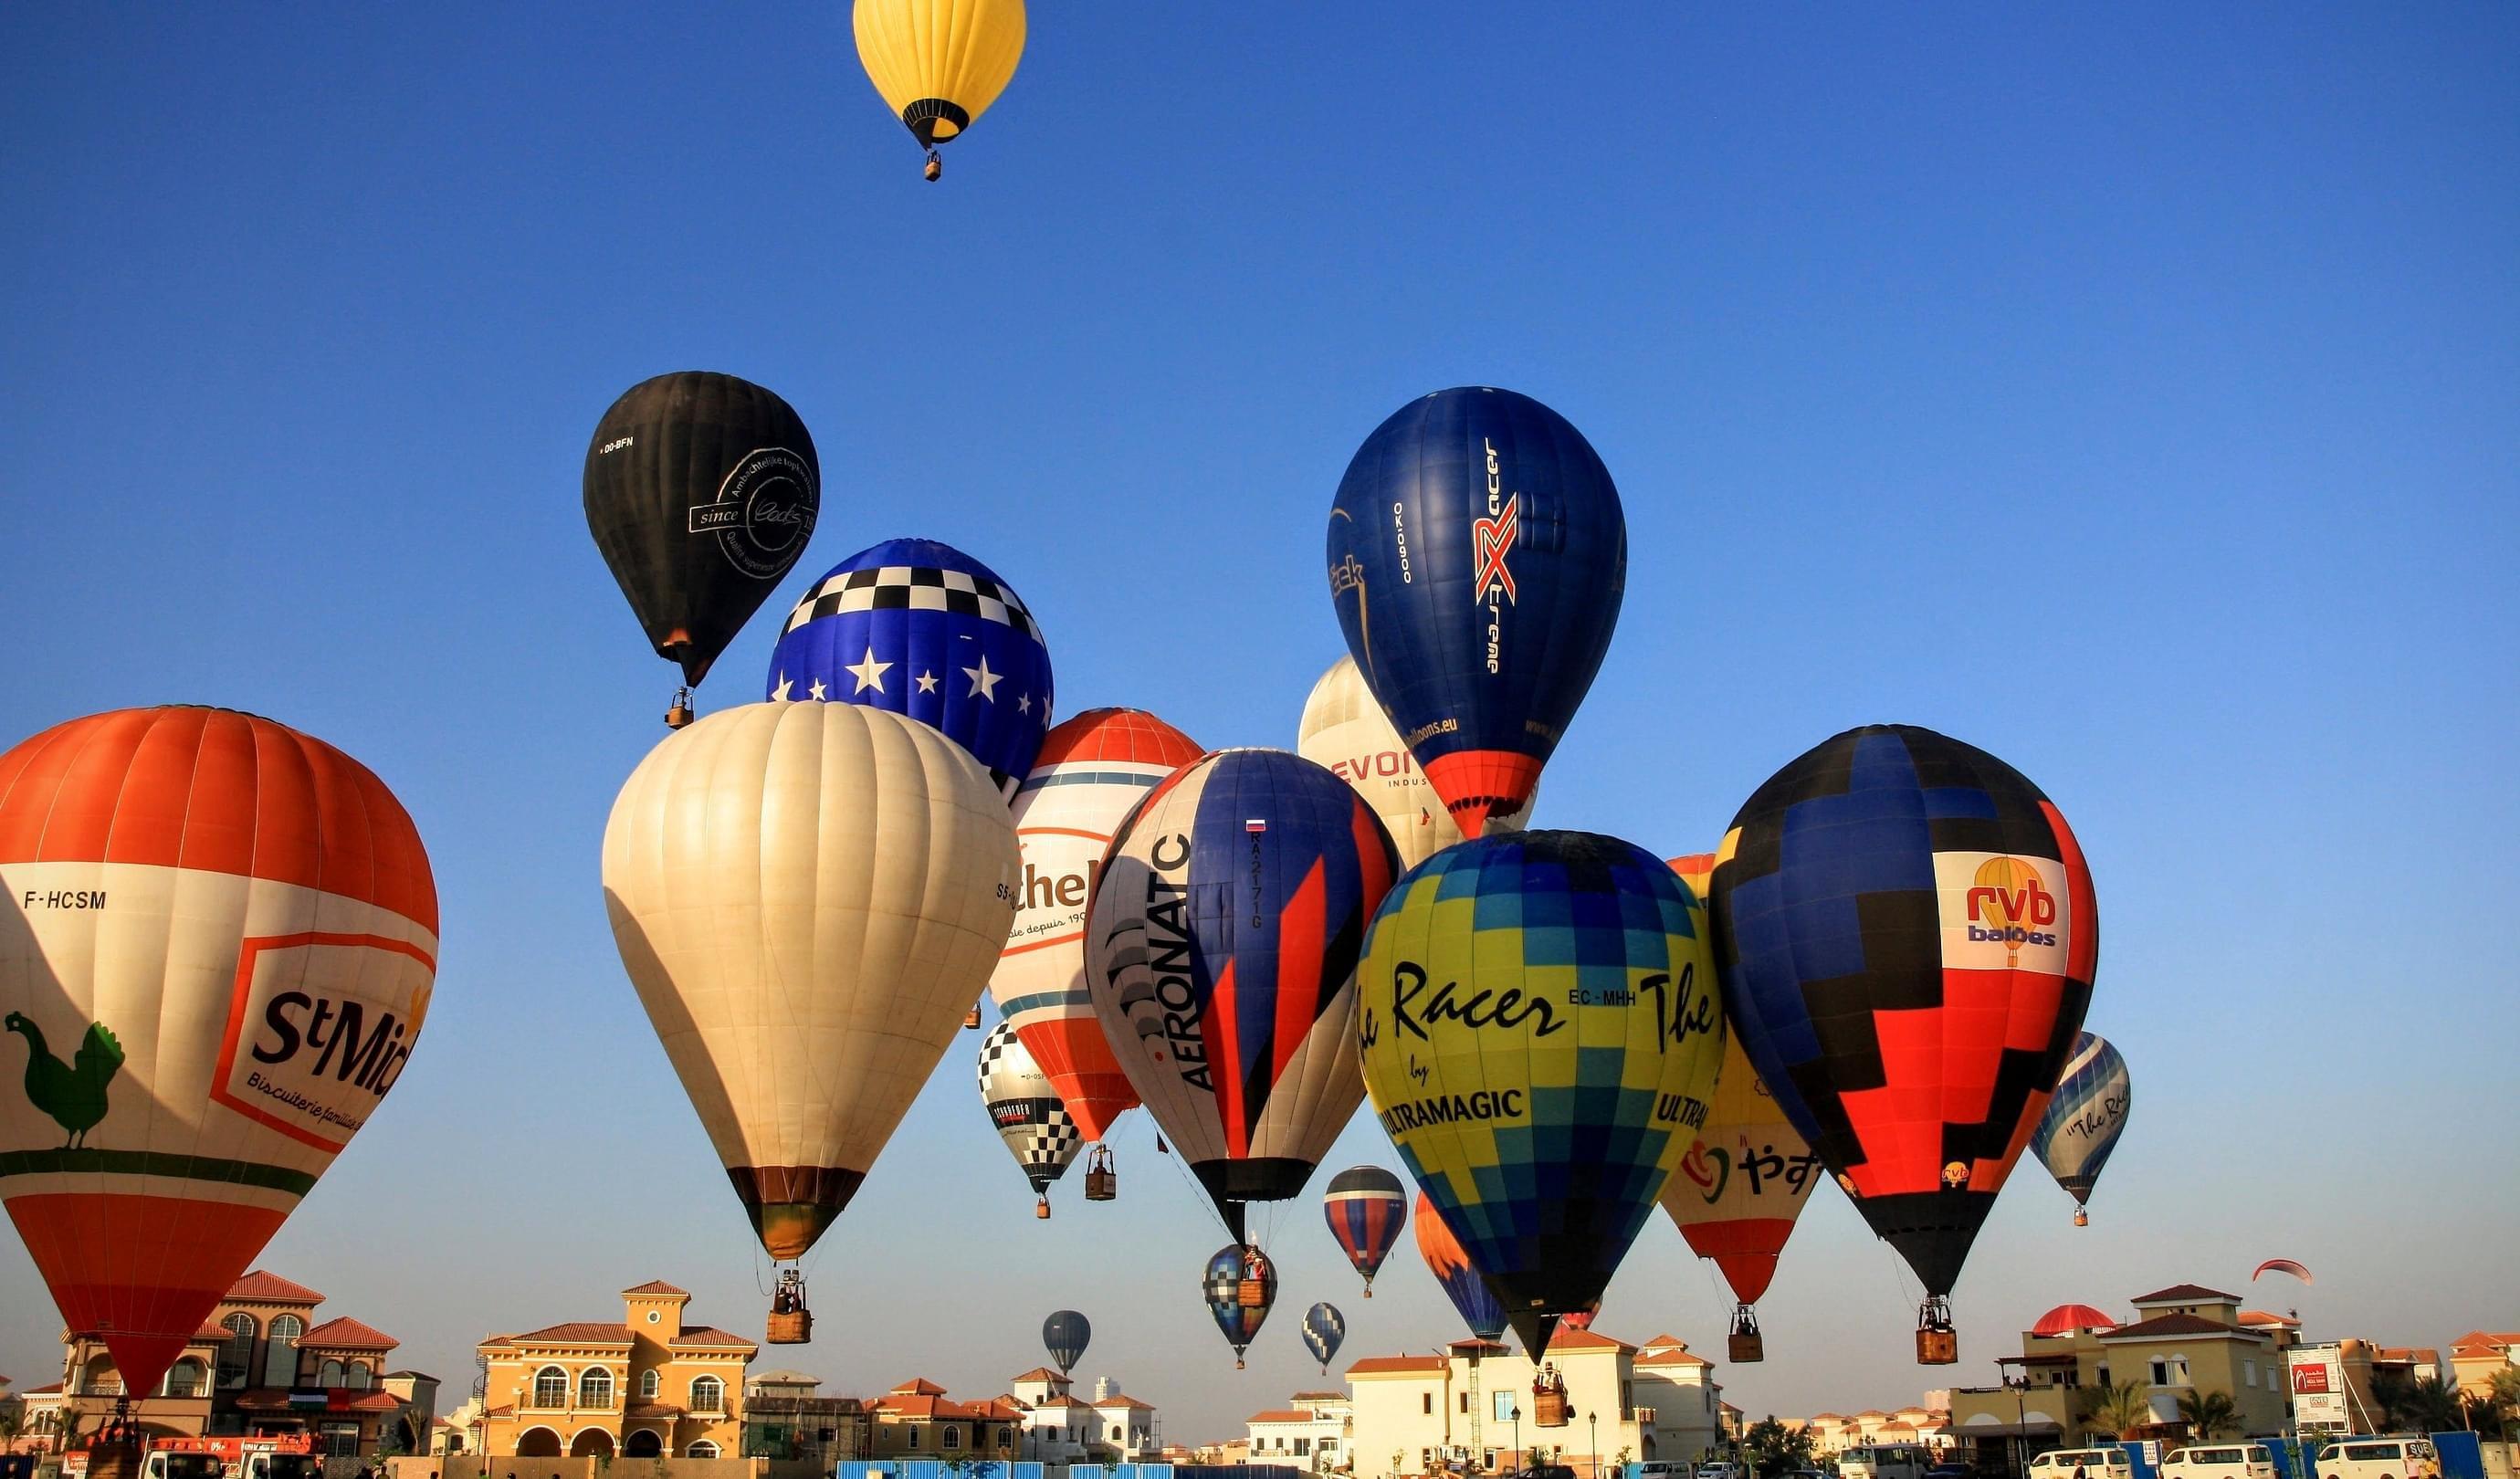 About Hot Air Balloon Dubai